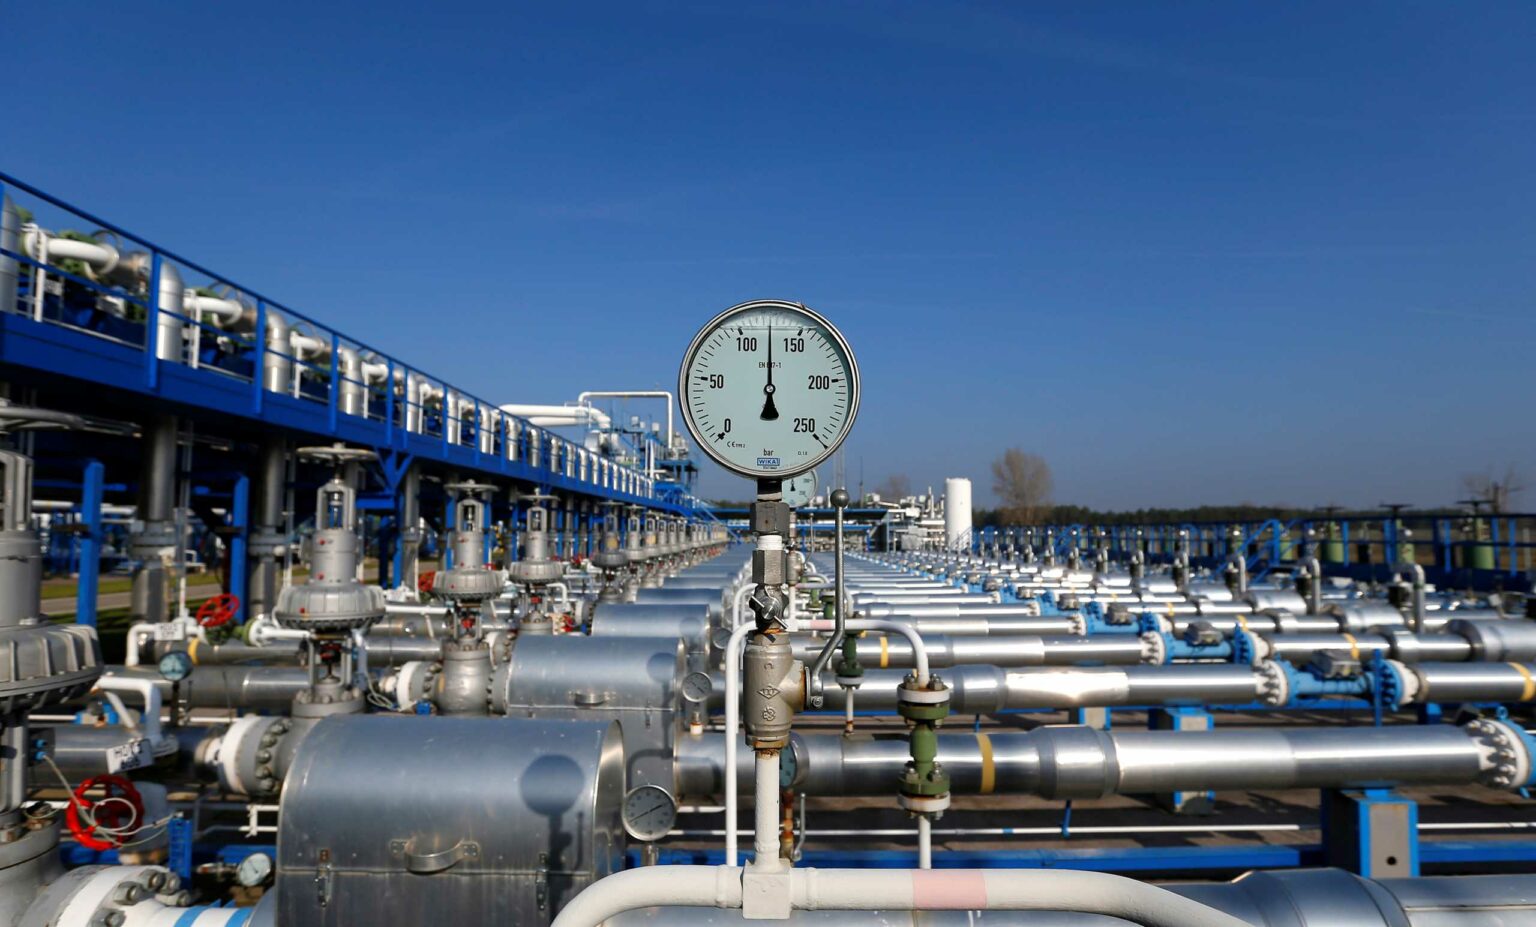 Ε.Ε: Απέρριψε το γερμανικό αίτημα για απαλλαγή εισφοράς φυσικού αερίου από ΦΠΑ